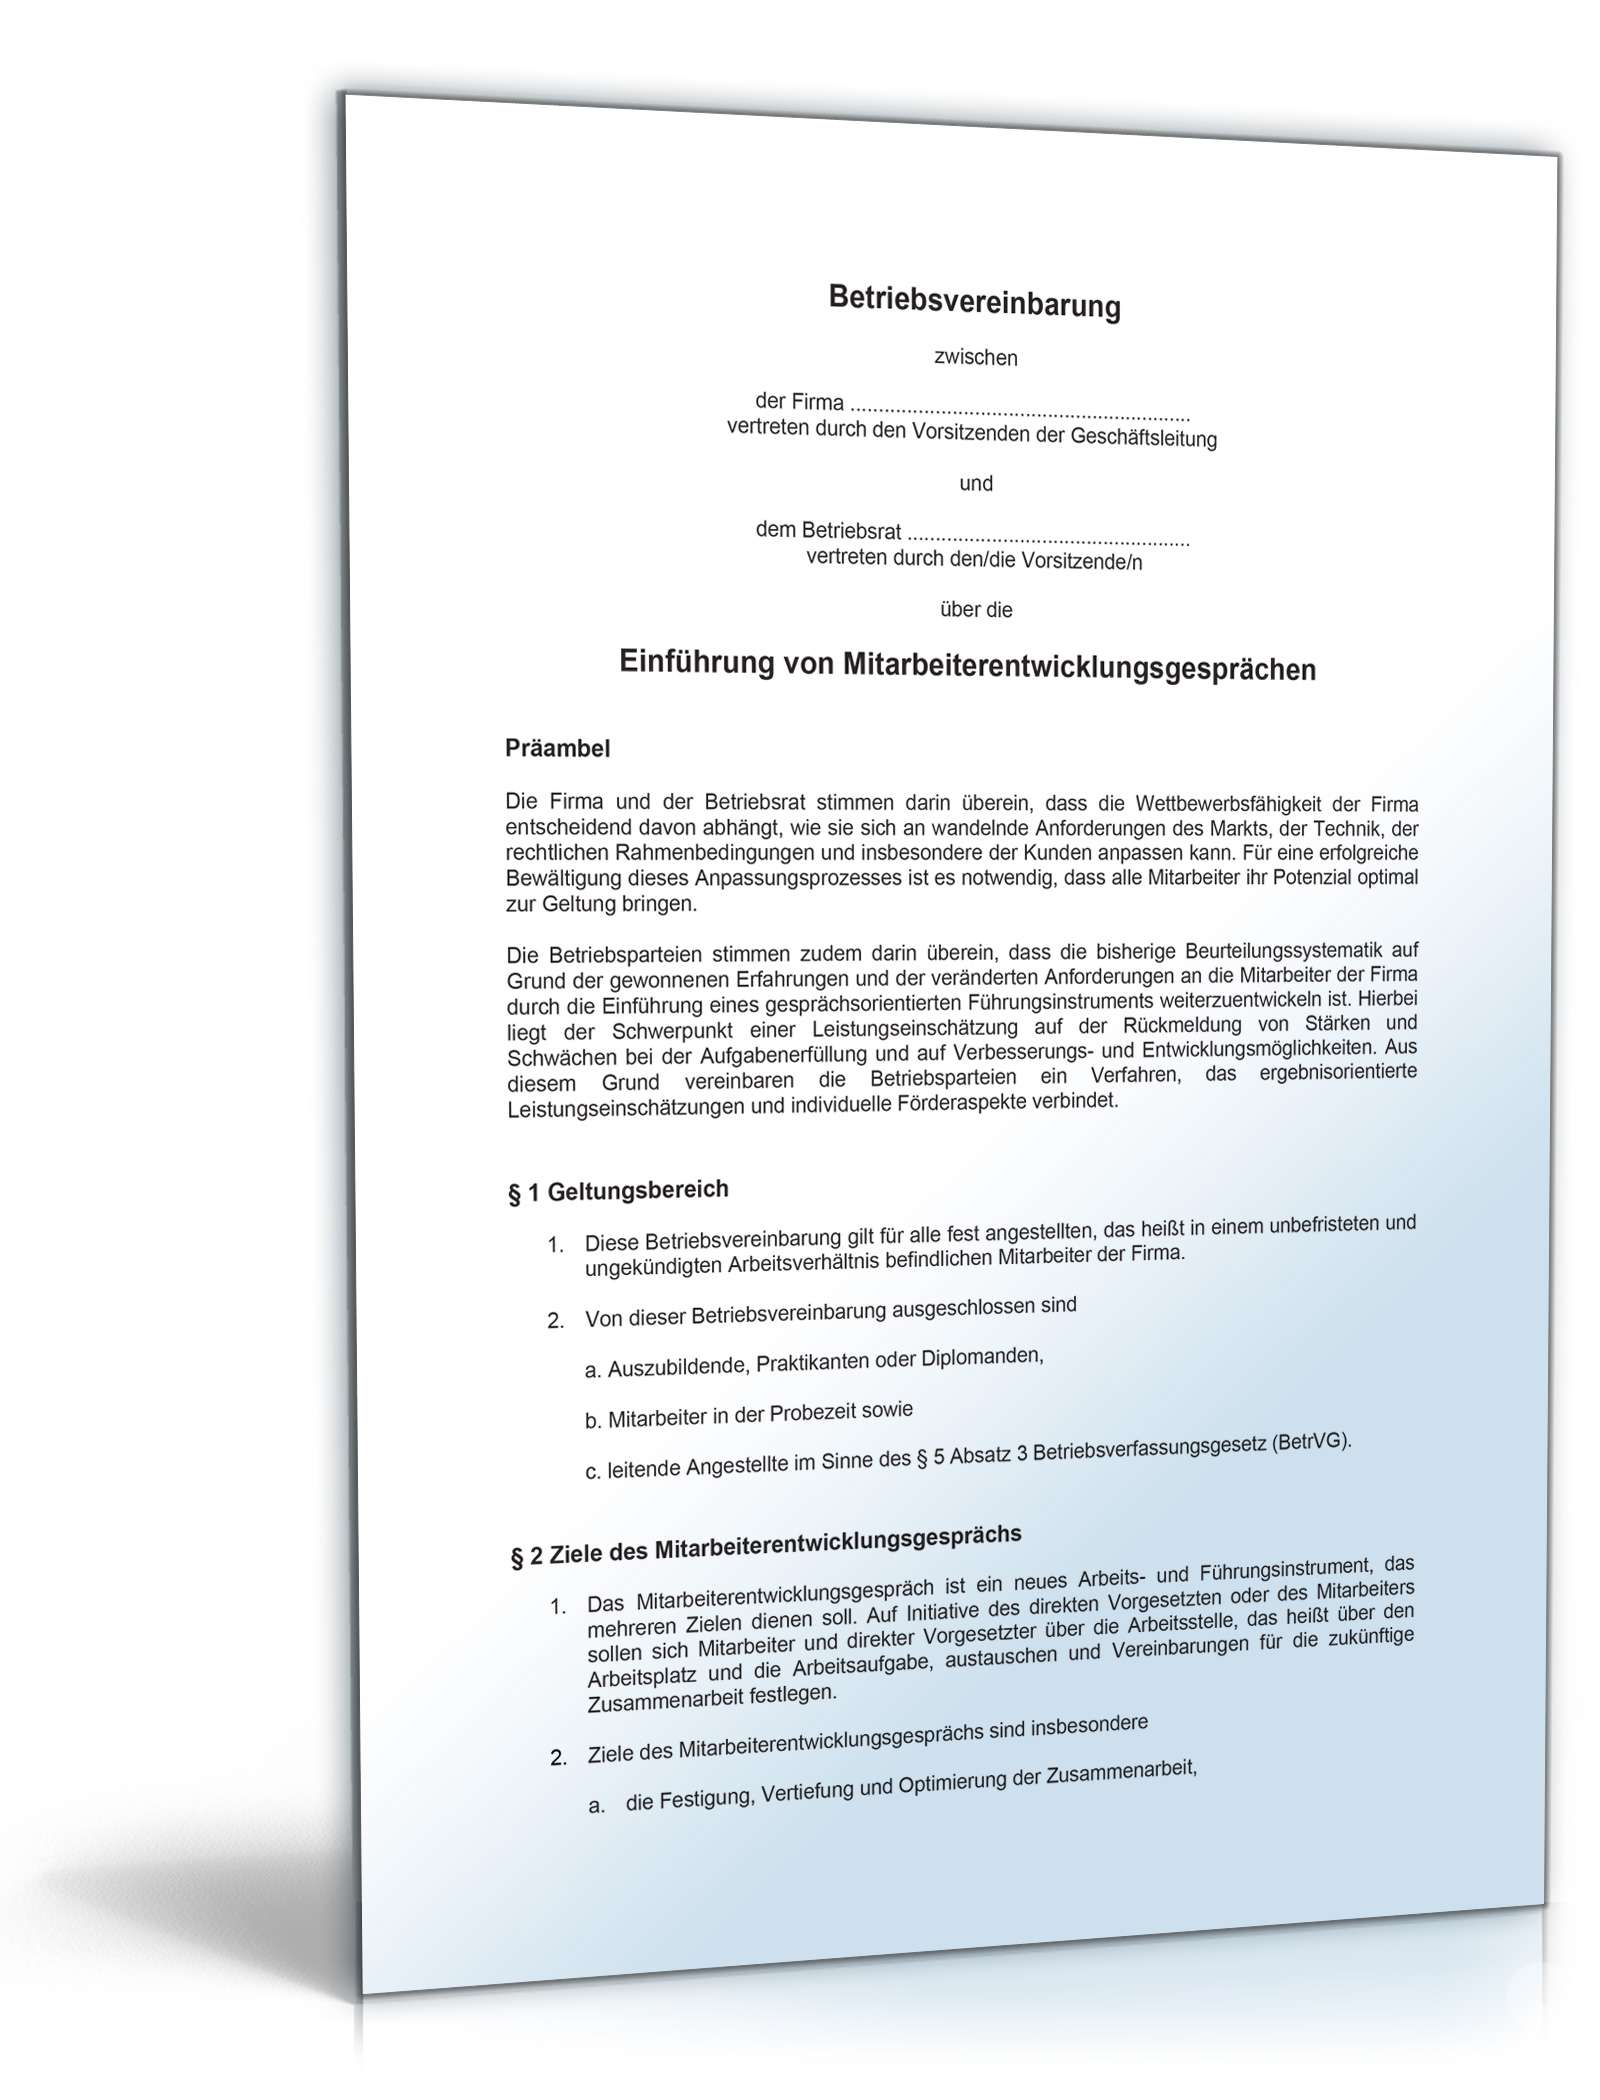 Hauptbild des Produkts: Betriebsvereinbarung über die Einführung von Mitarbeiterentwicklungsgesprächen